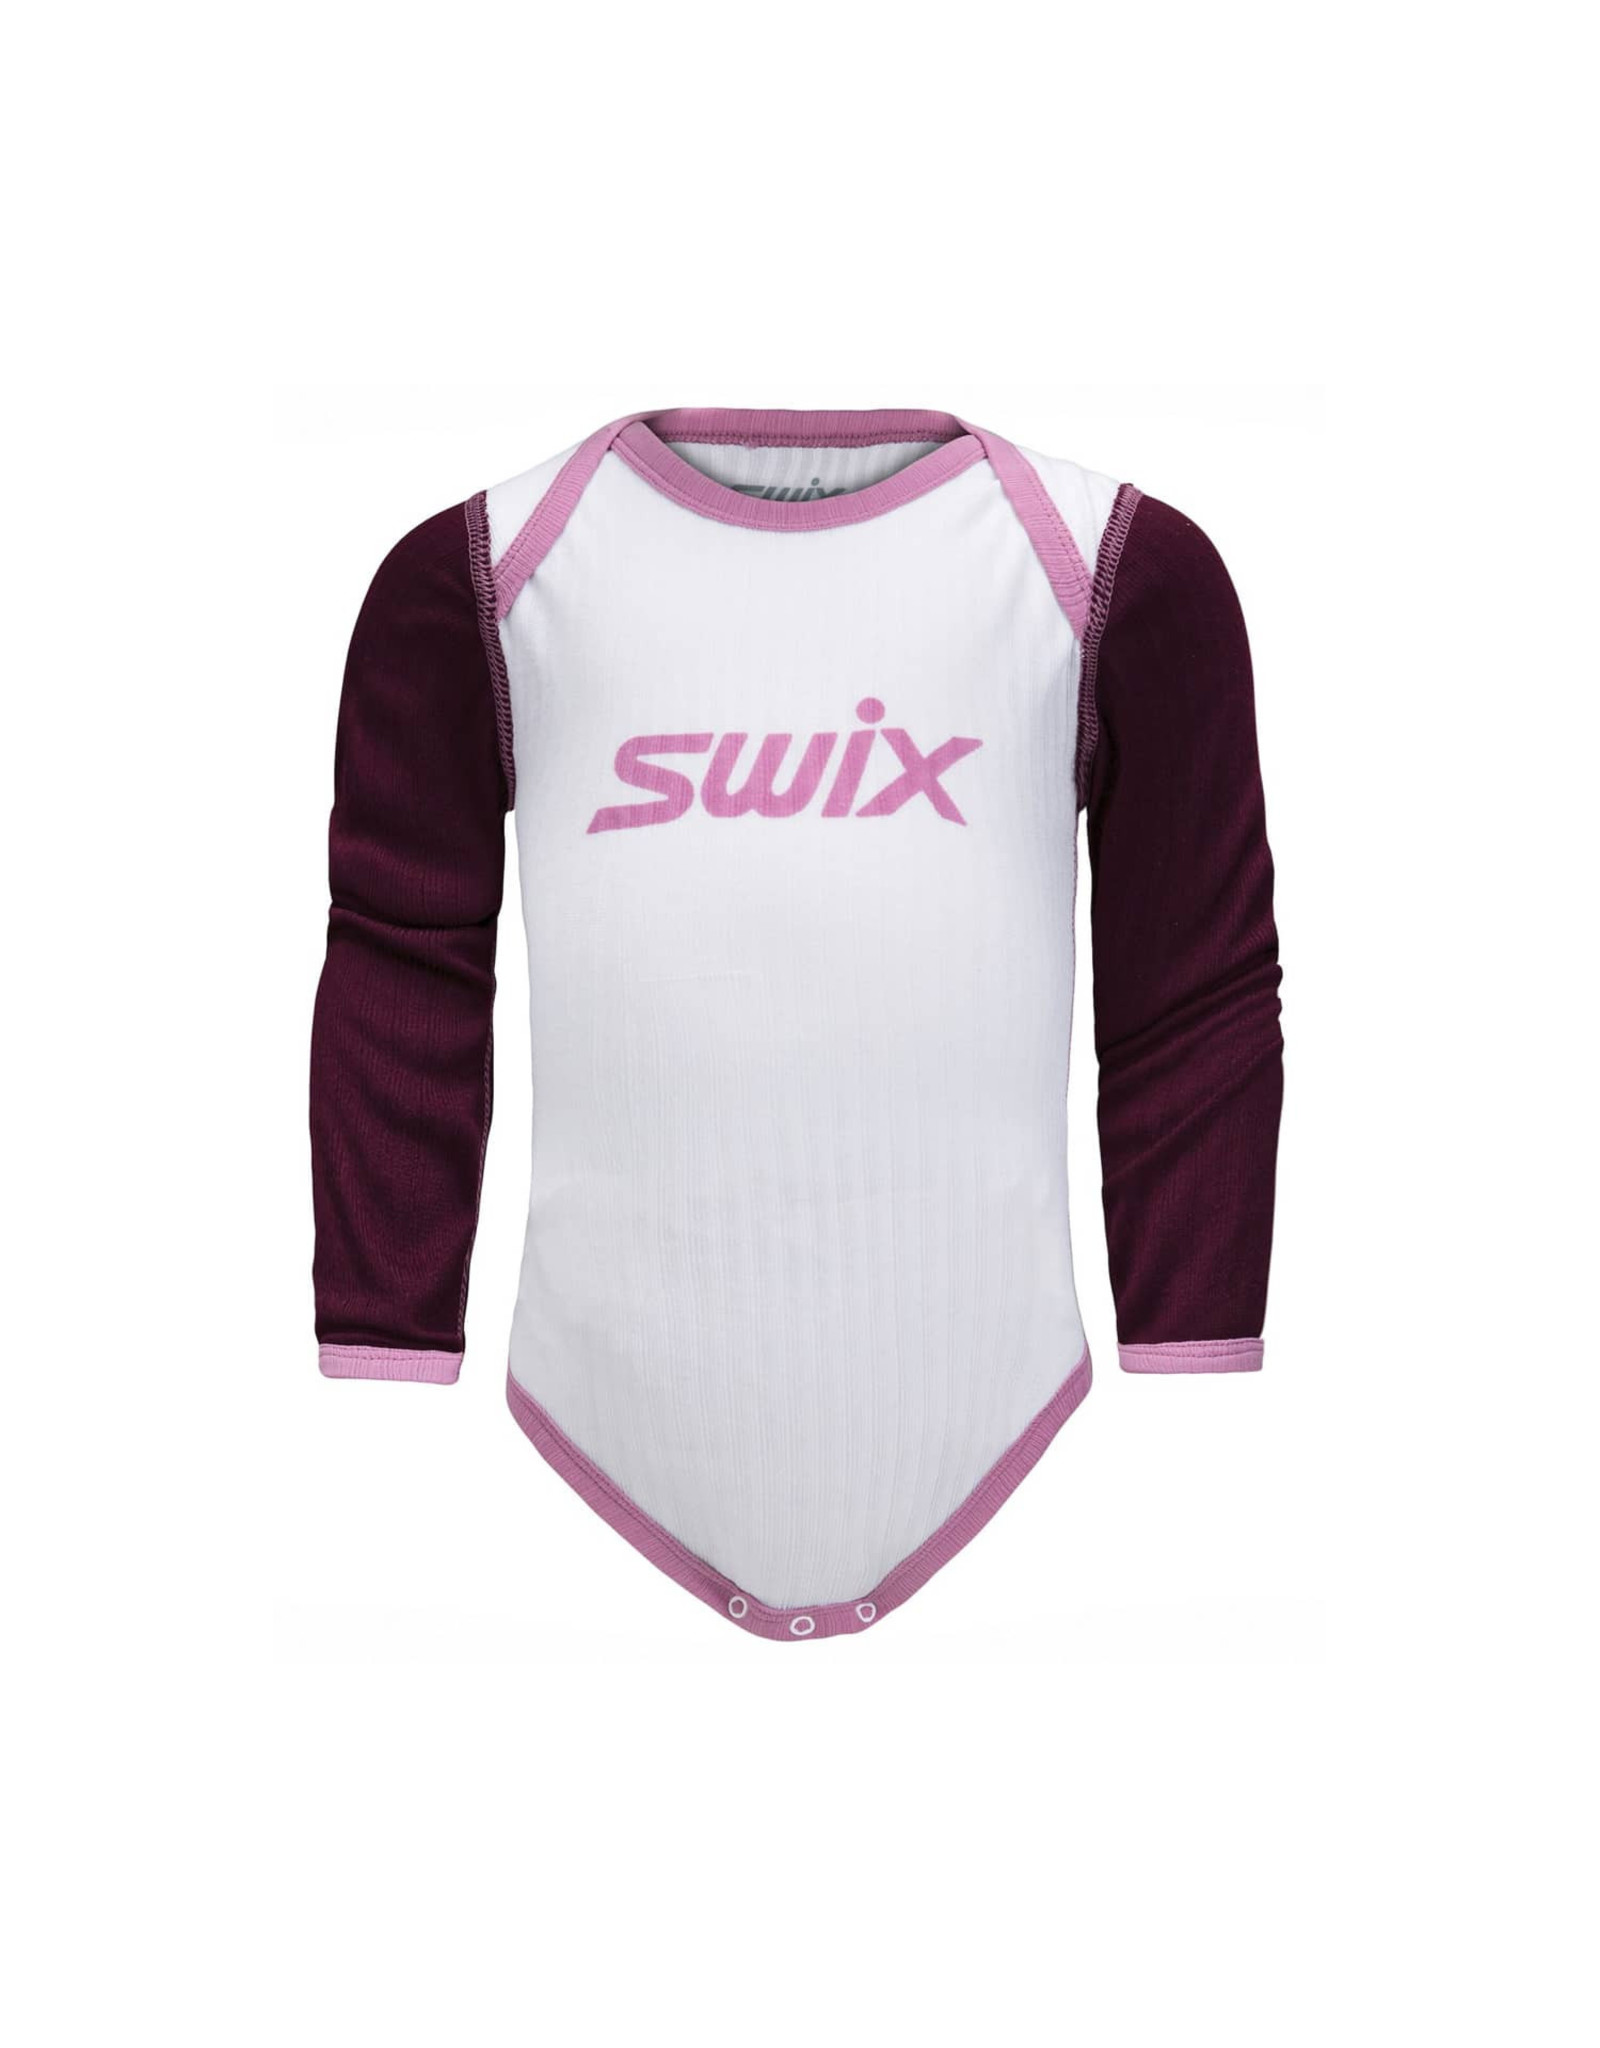 Swix Swix RaceX Baby Bodywear